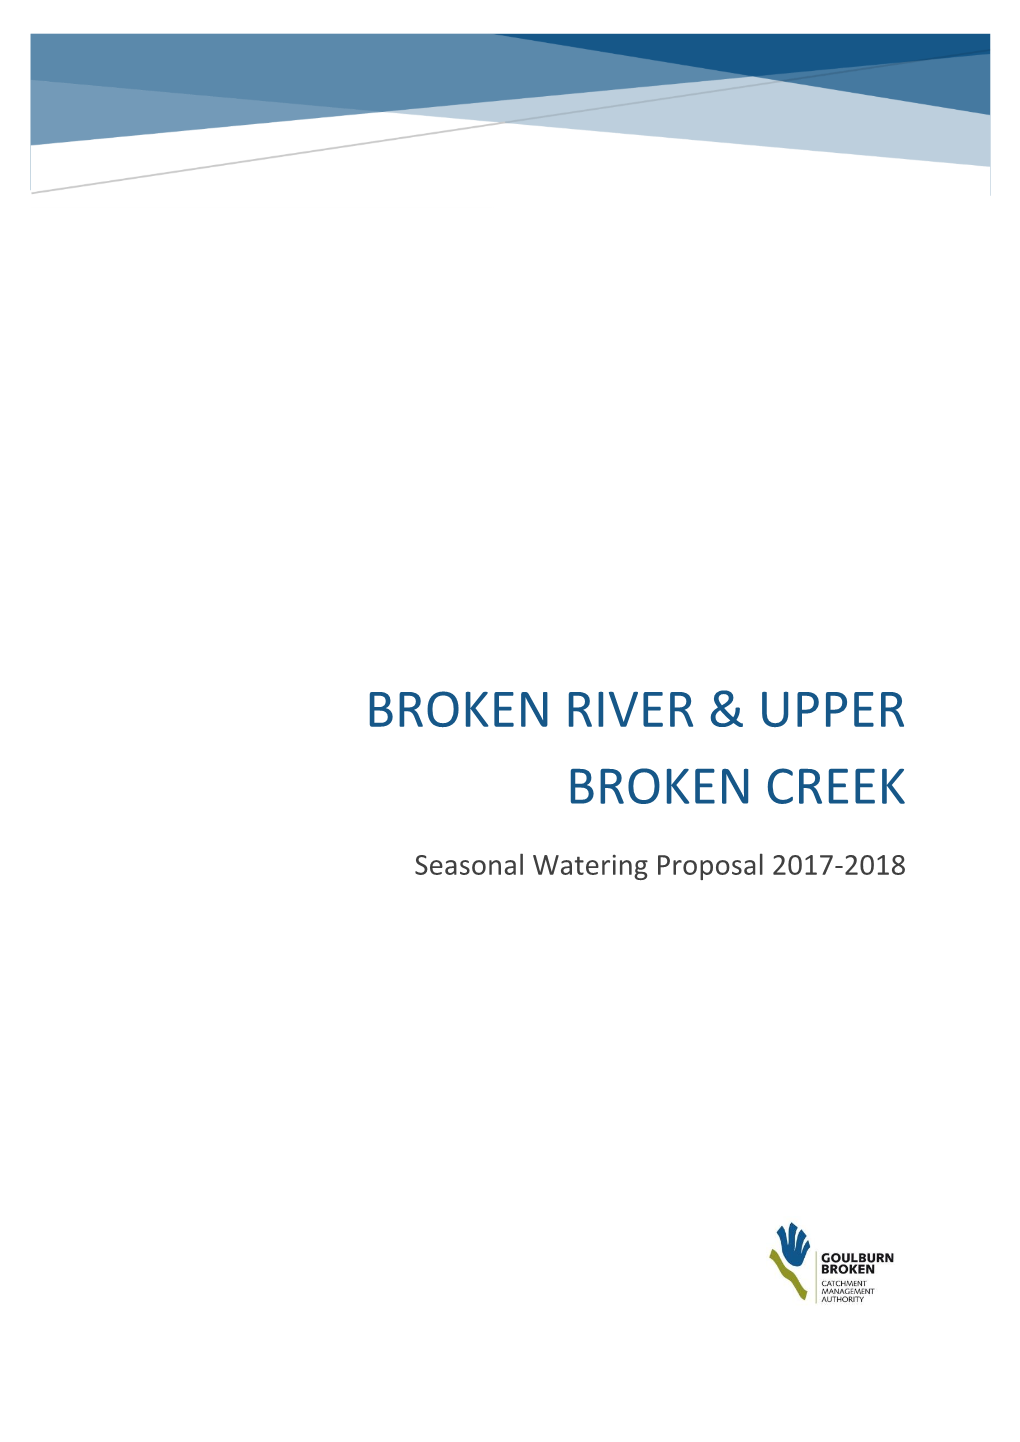 Broken River & Upper Broken Creek